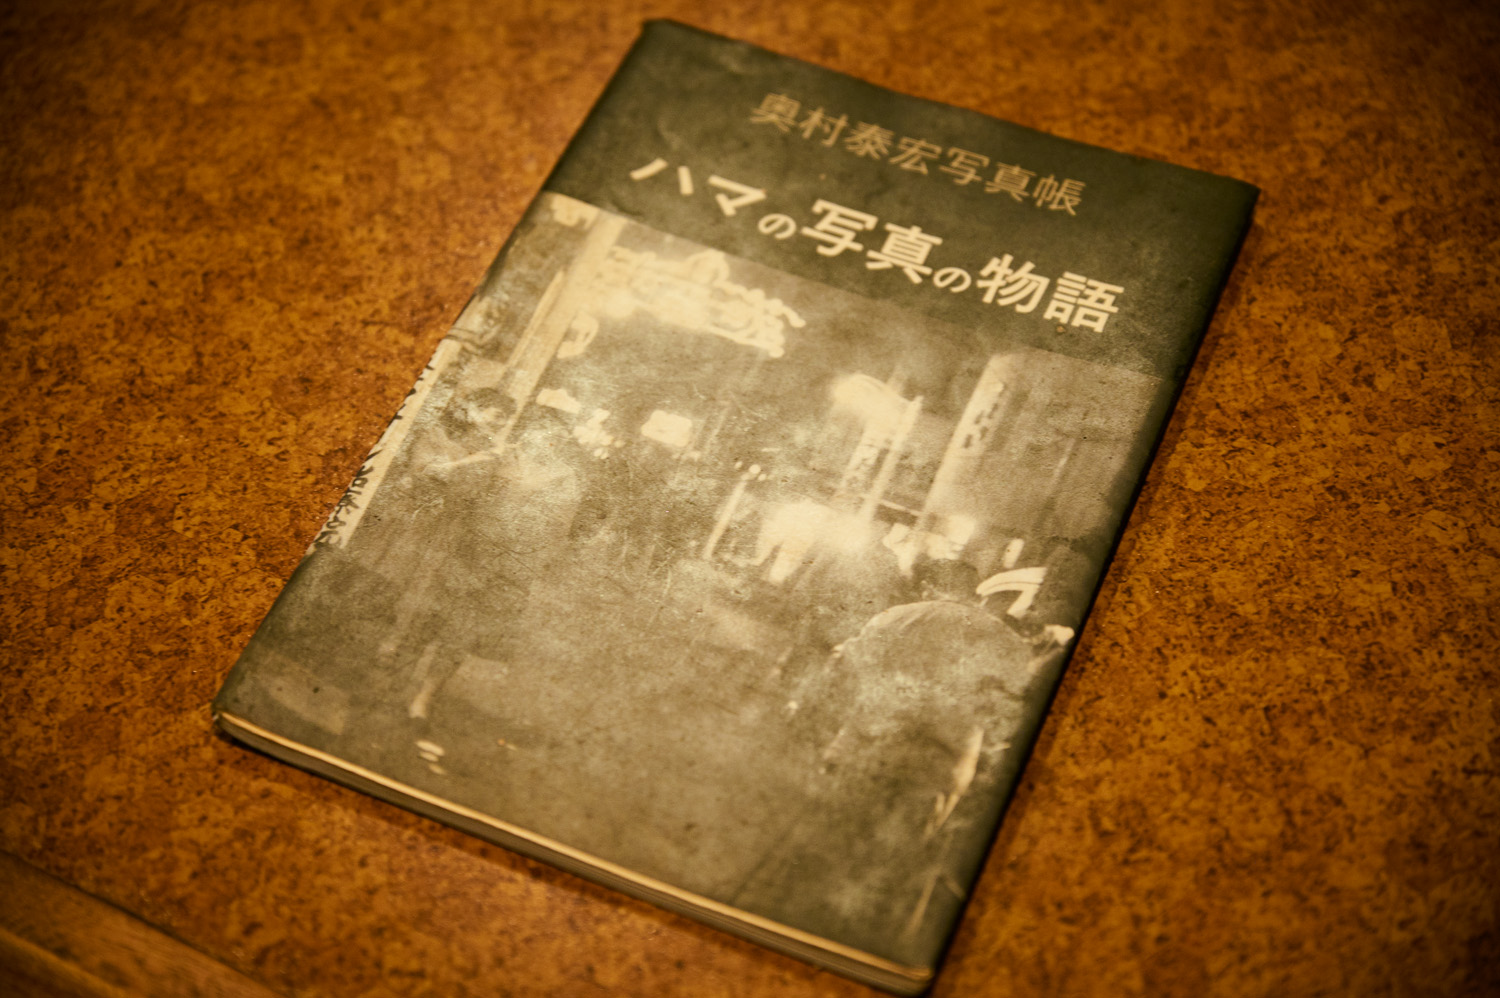 昭和時代の横浜の街並みを撮影した写真集。片岡さんの解説付きで読むと、俄然味わい深いのです。